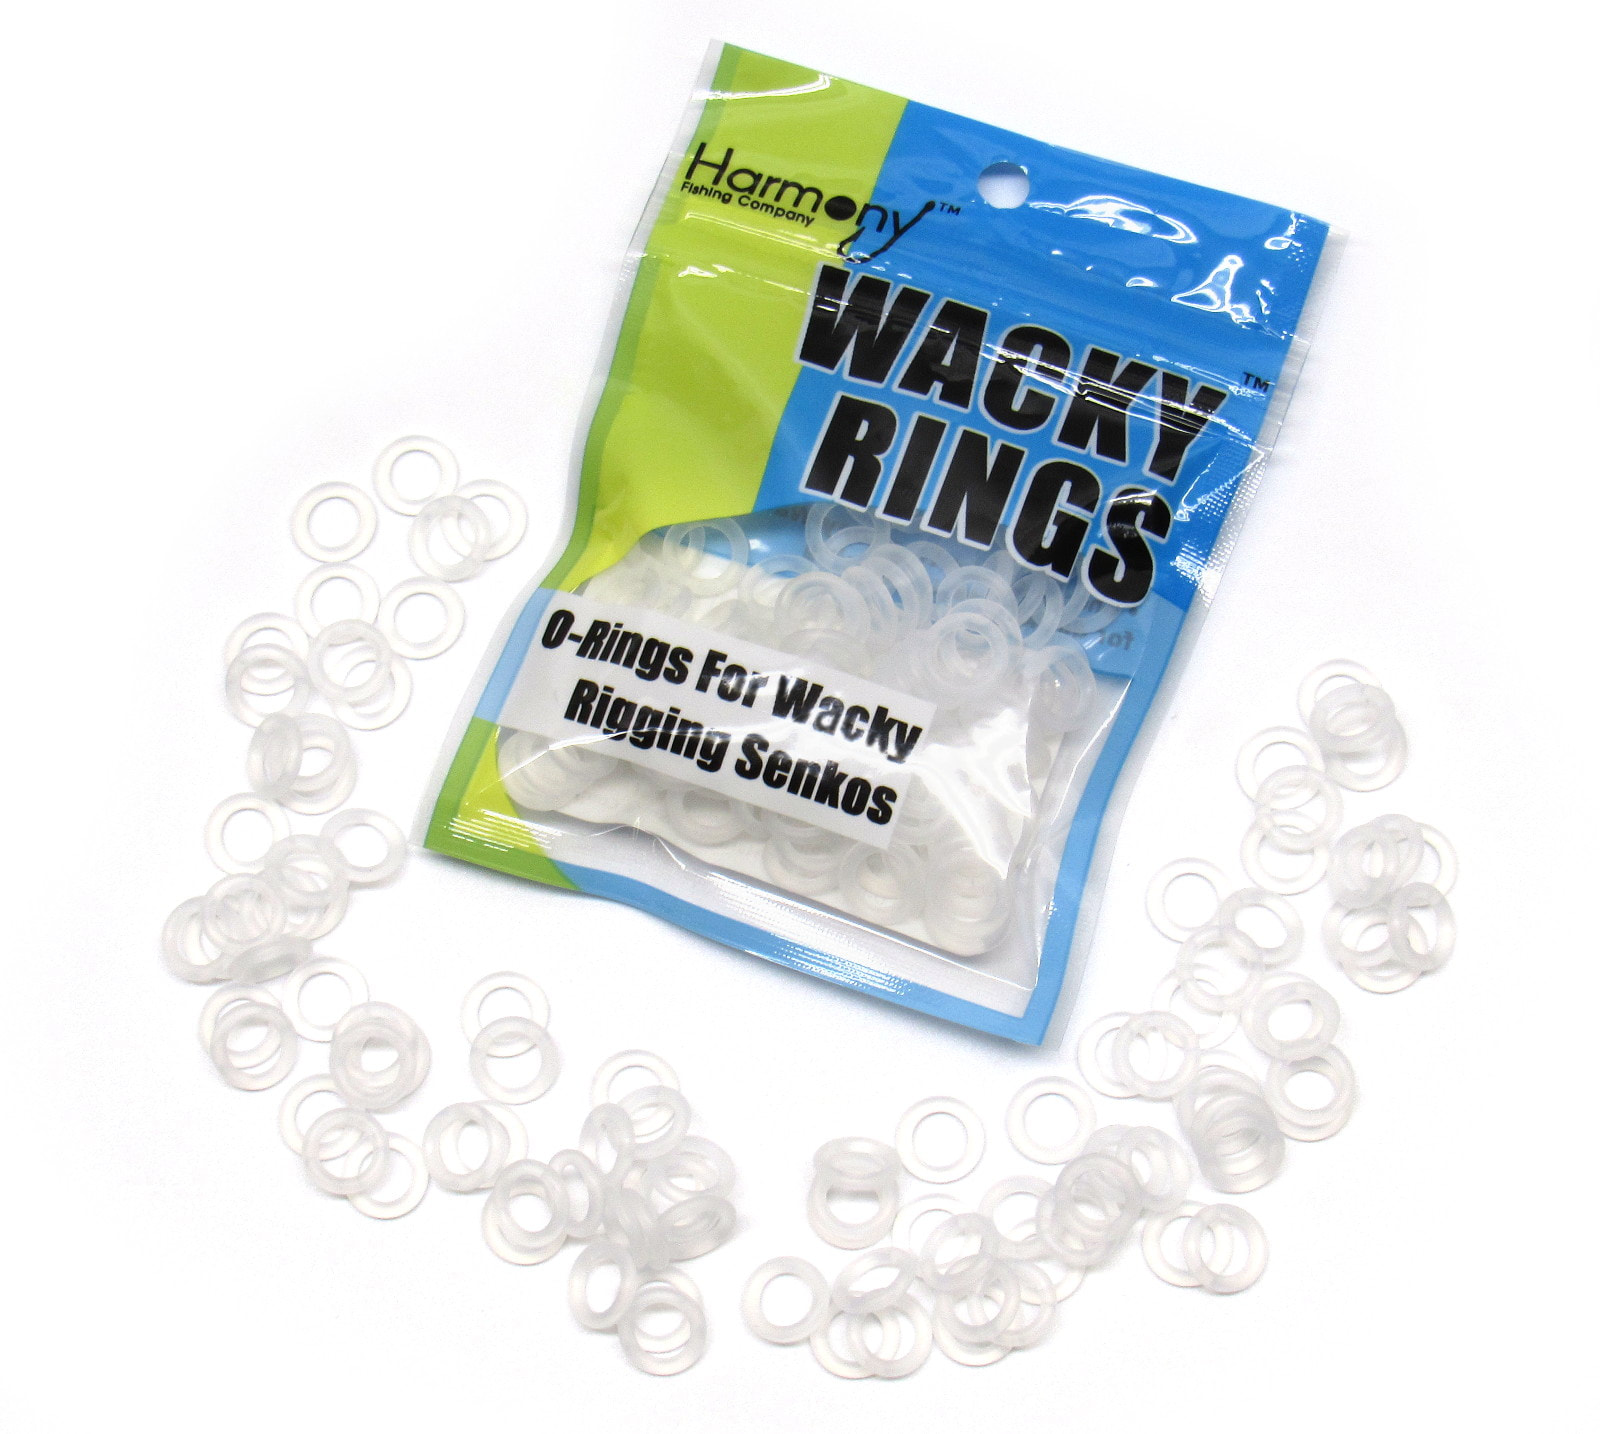 Wacky Rings O-Rings for Wacky Rigging Senko Worms 100 orings for 4&5 Senkos